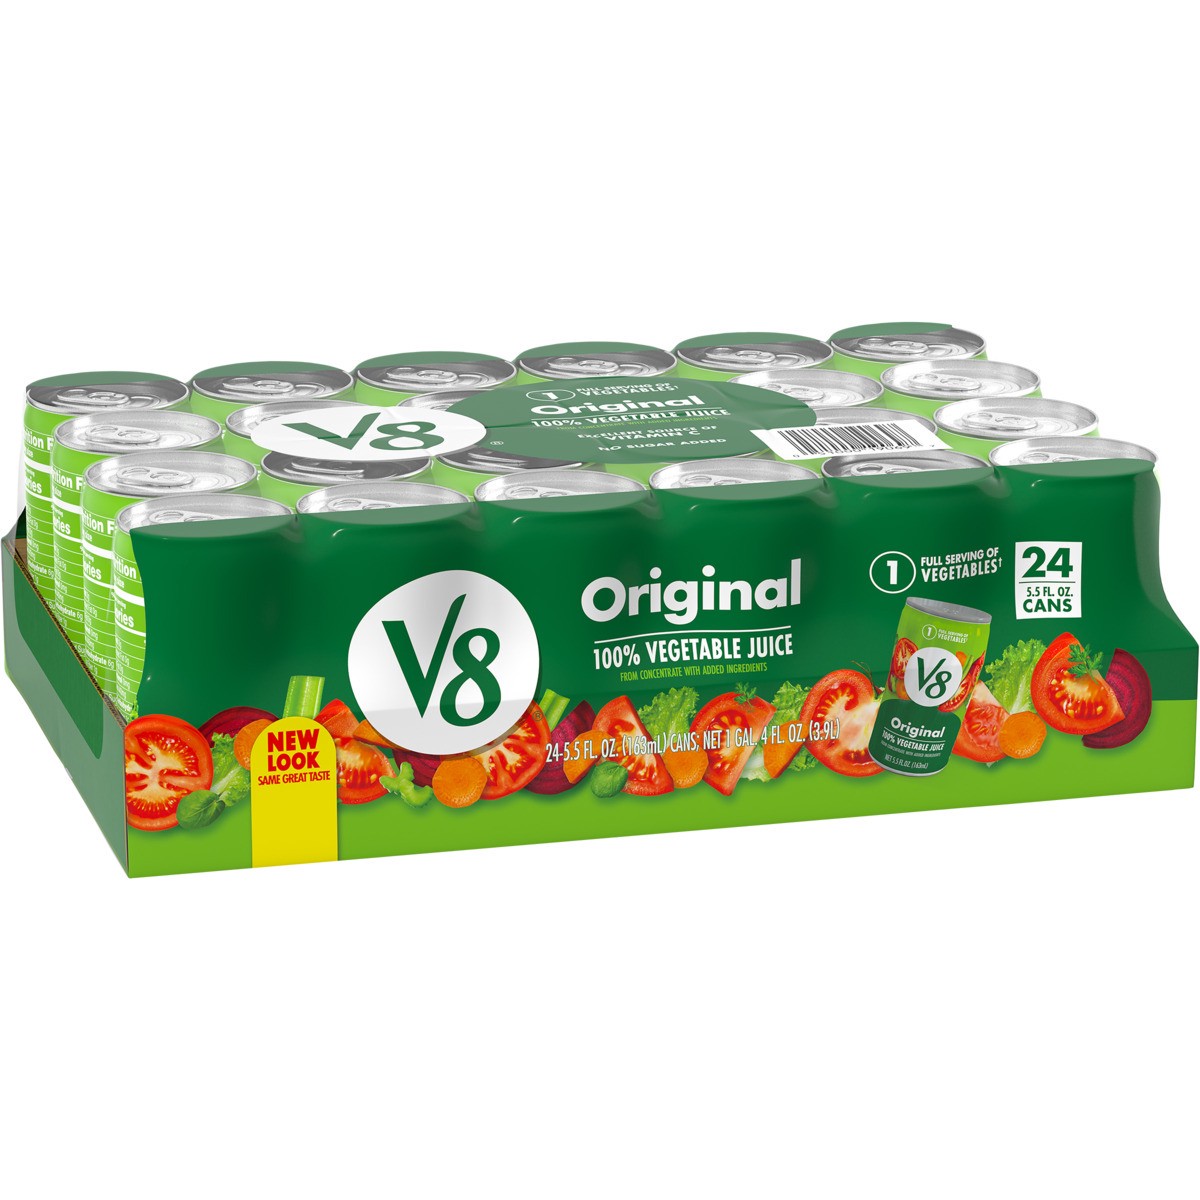 slide 3 of 11, V8 Original 100% Vegetable Juice, 5.5 fl oz Can (24 Pack), 132 oz